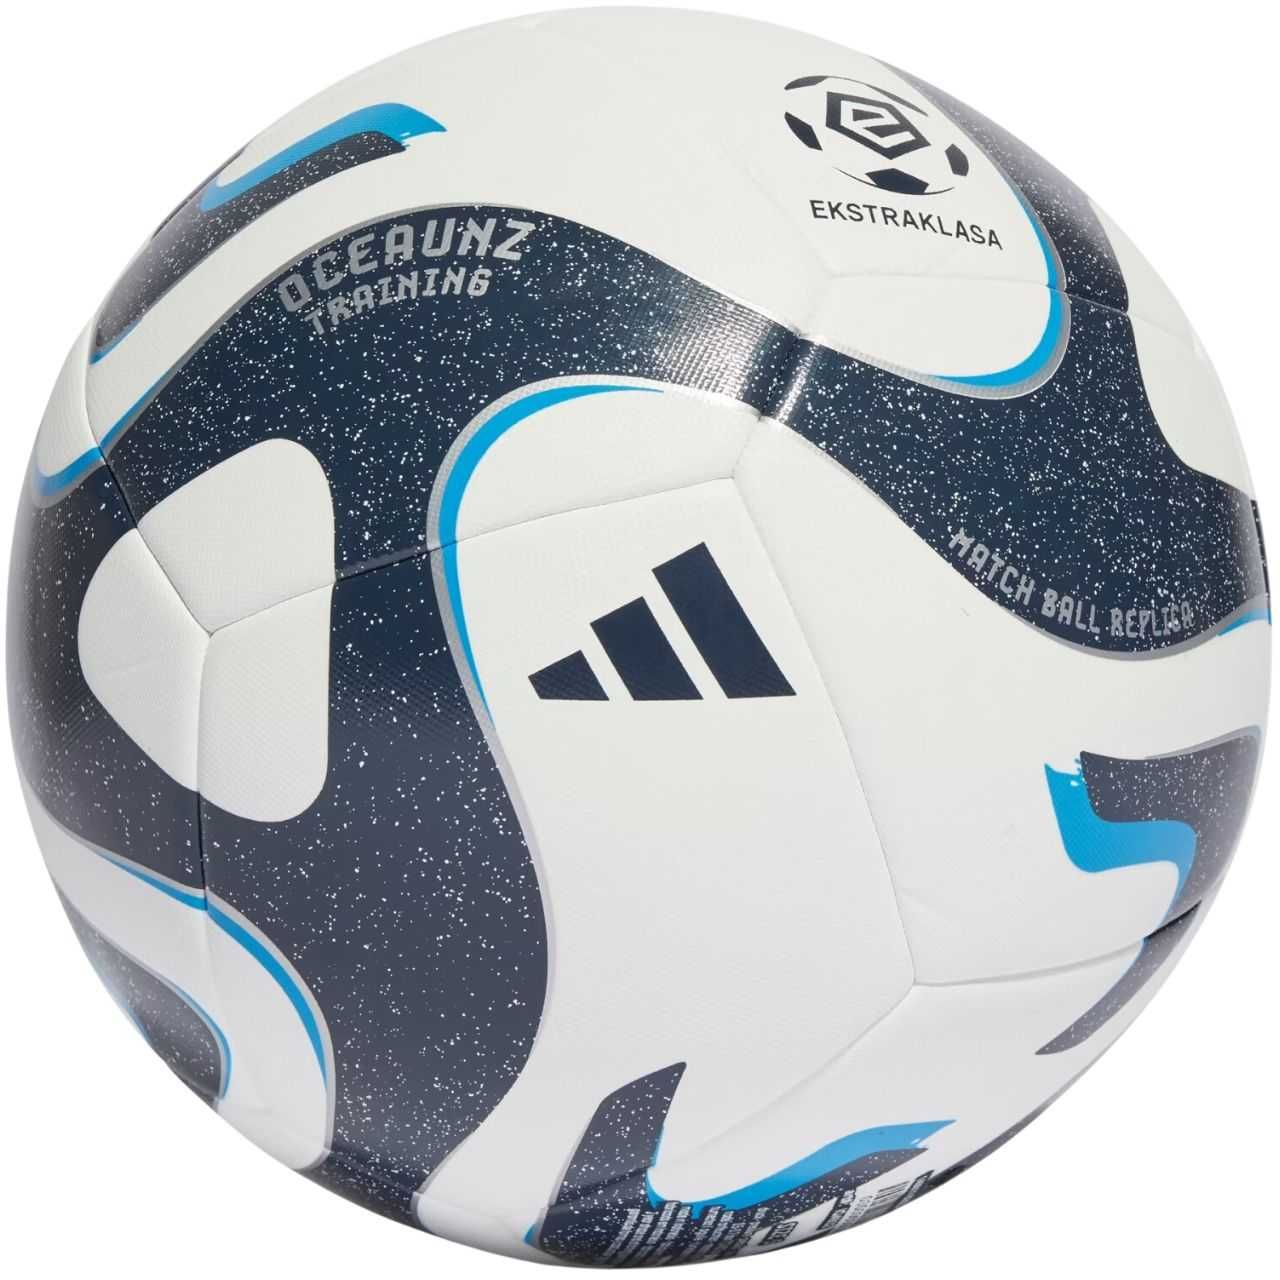 Piłka nożna adidas Ekstraklasa Training biało-granatowa IQ4932 roz.4